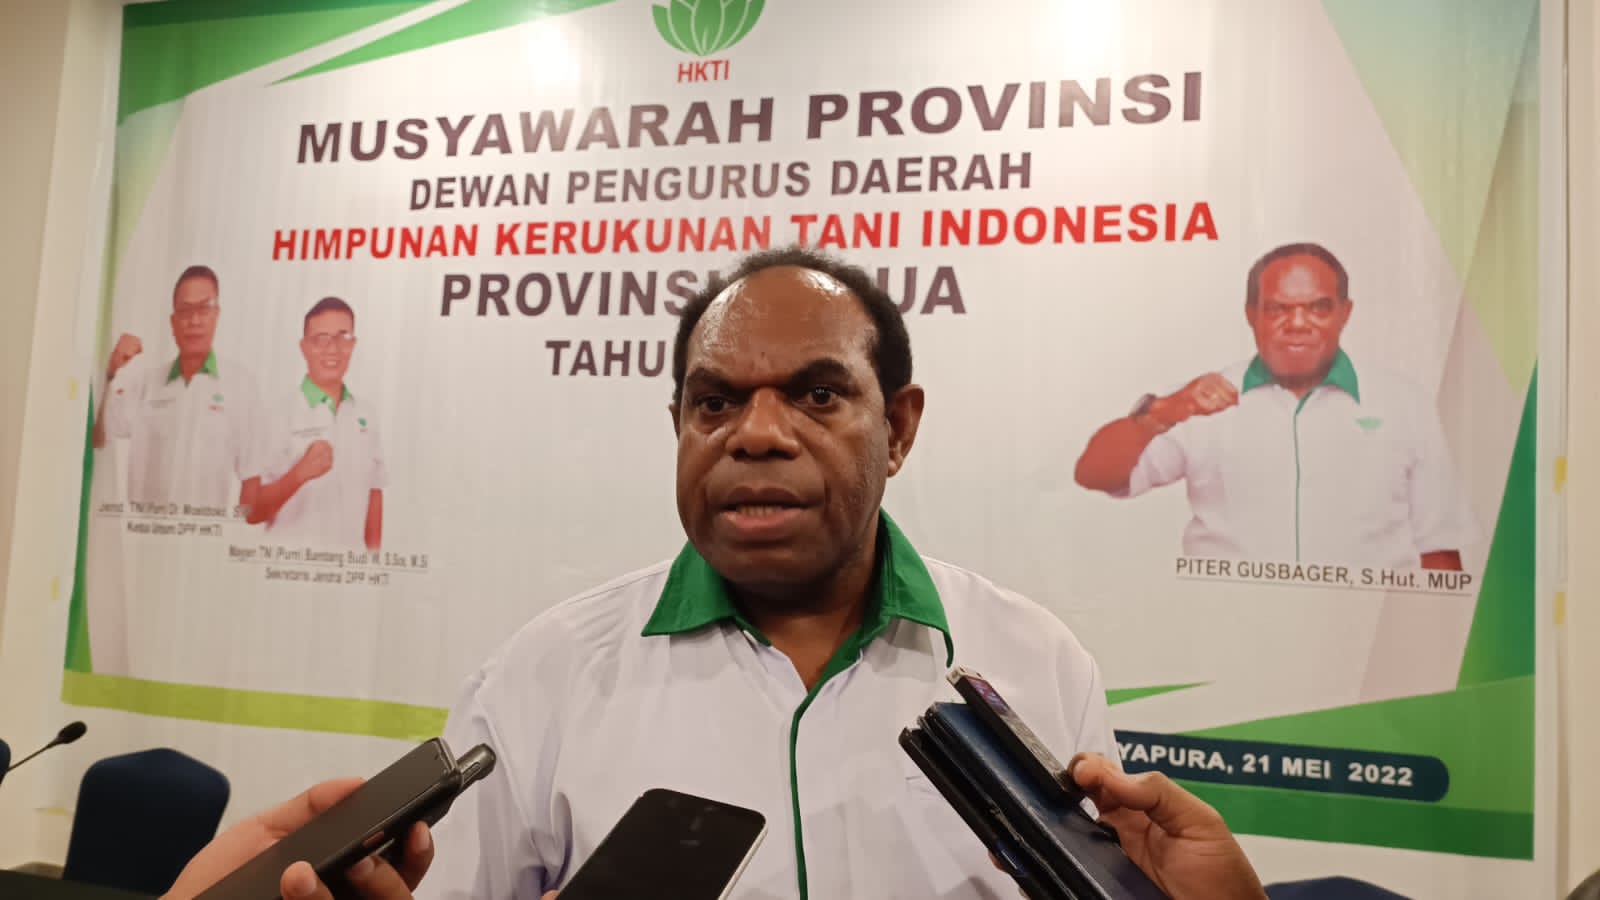 Tanpa Lawan, Piter Gusbager Resmi Pimpinan HKTI Provinsi Papua